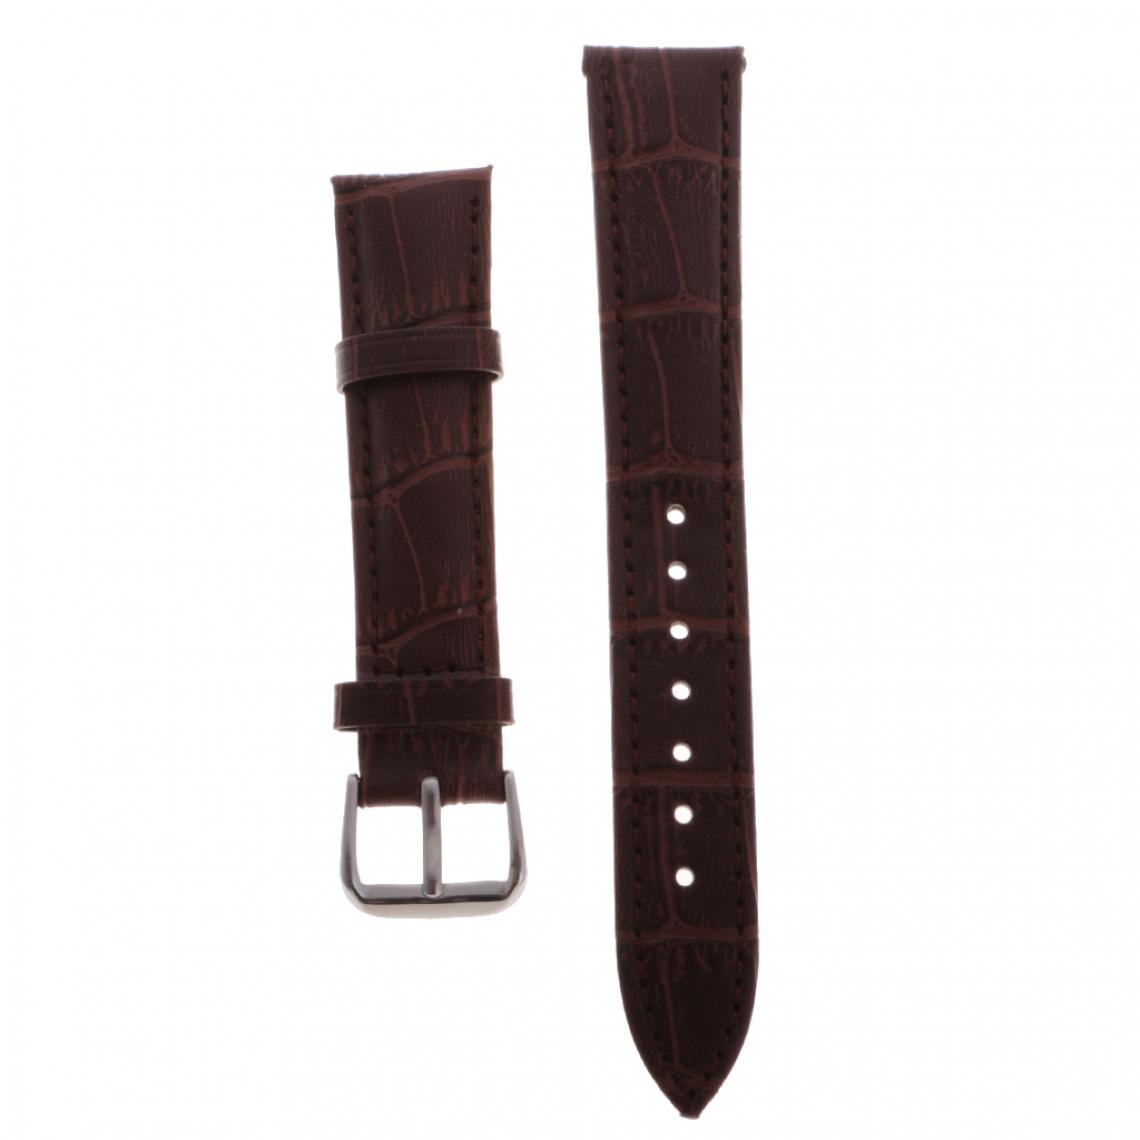 marque generique - Bracelet en cuir de haute qualité bracelet bracelet pour montres 14mm noir - Accessoires montres connectées